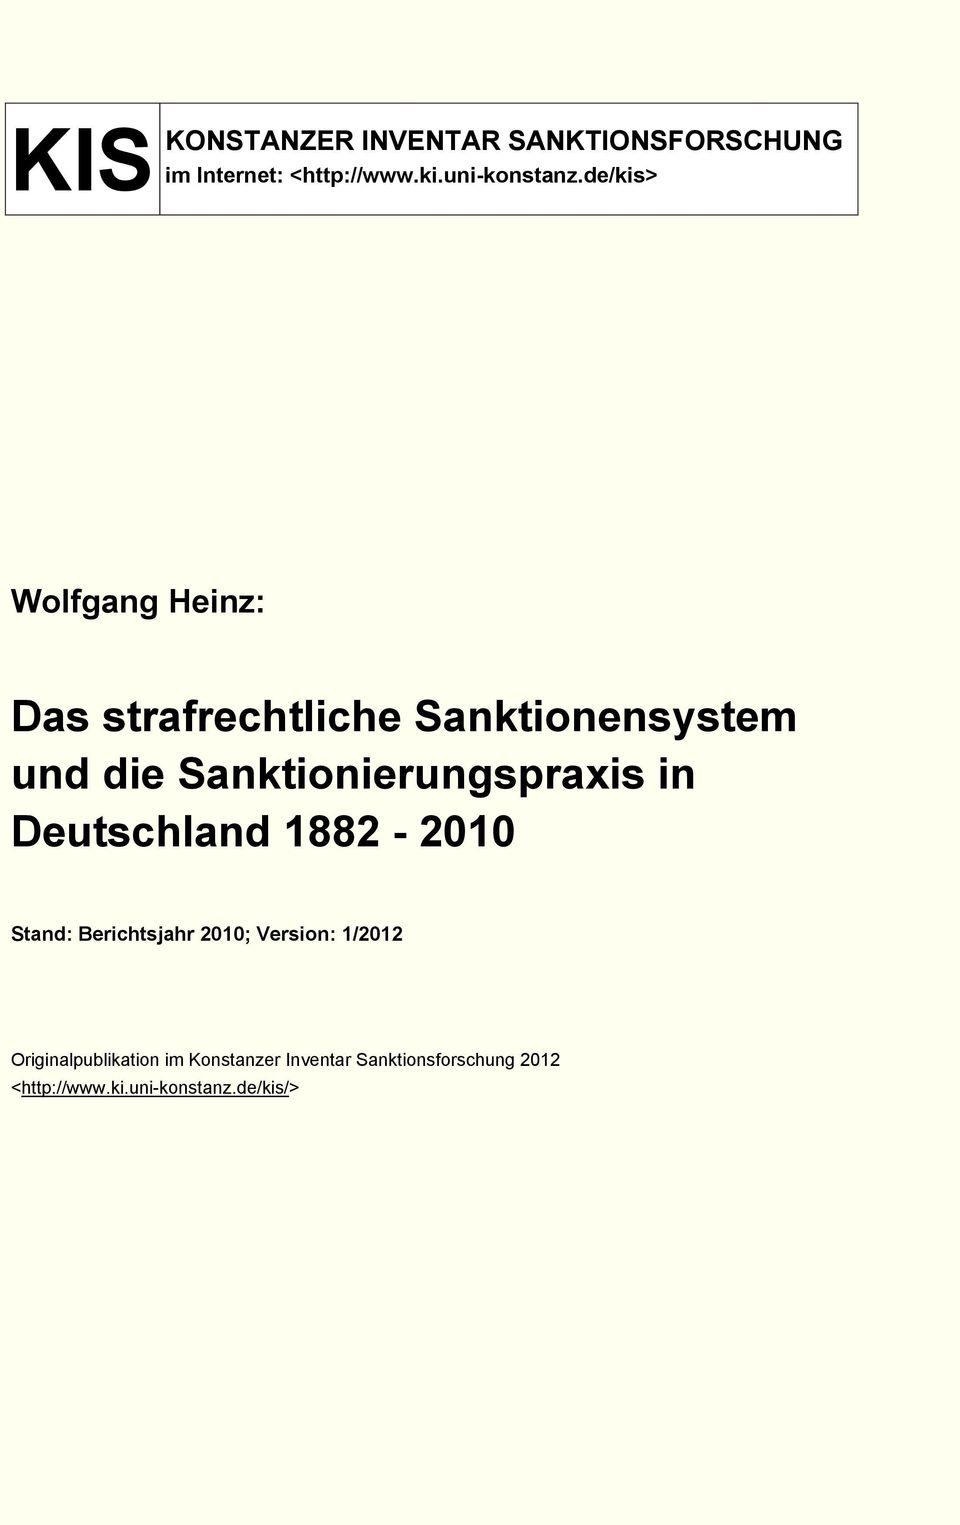 Sanktionensystem und die Sanktionierungspraxis in Deutschland 1882-2010 Stand: